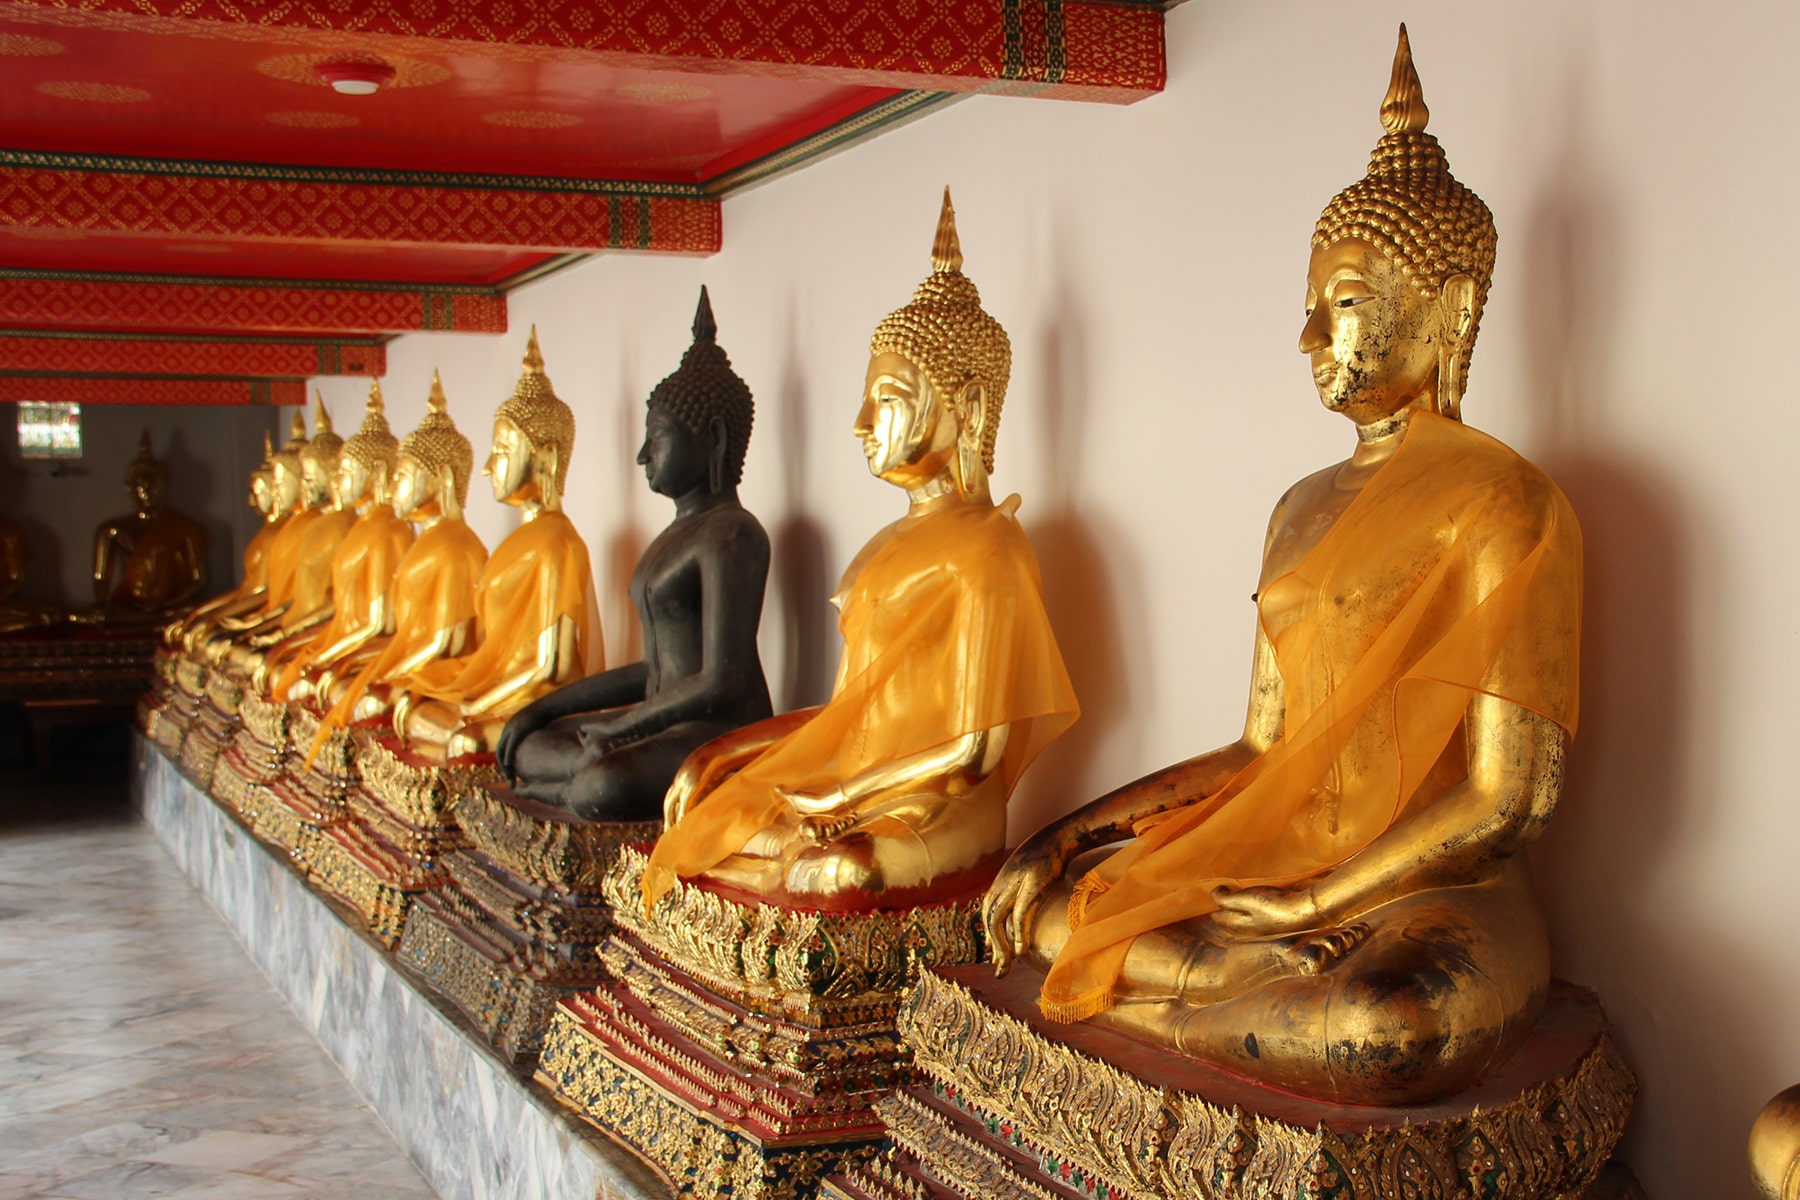 Les statues disposées dans les cours intérieures des temples